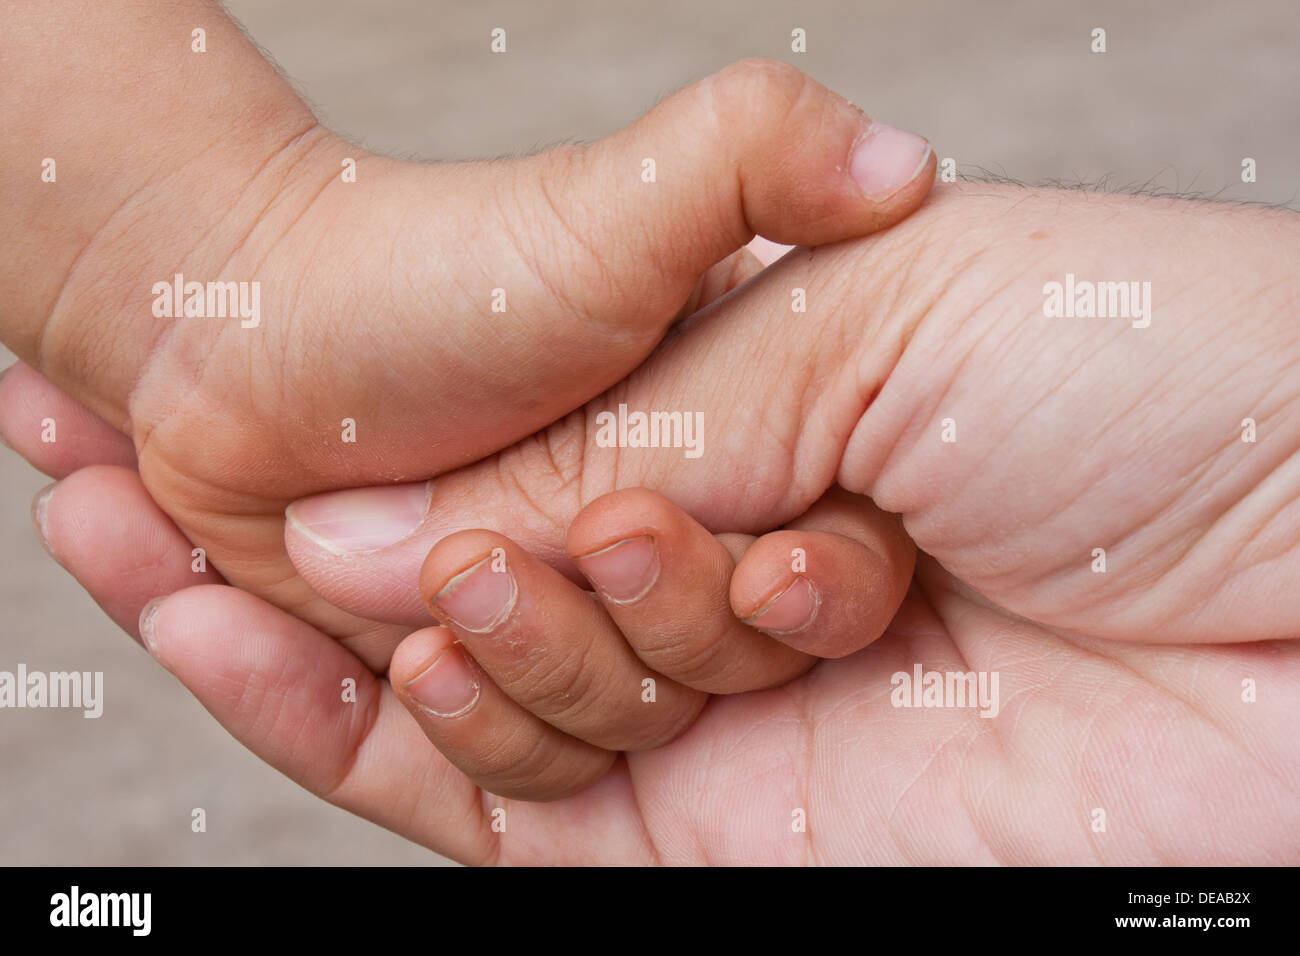 L'aide du bras soins du corps caresse bébé enfant enfance famille père  confort main doigt ongle du pouce geste fragile tendresse Photo Stock -  Alamy